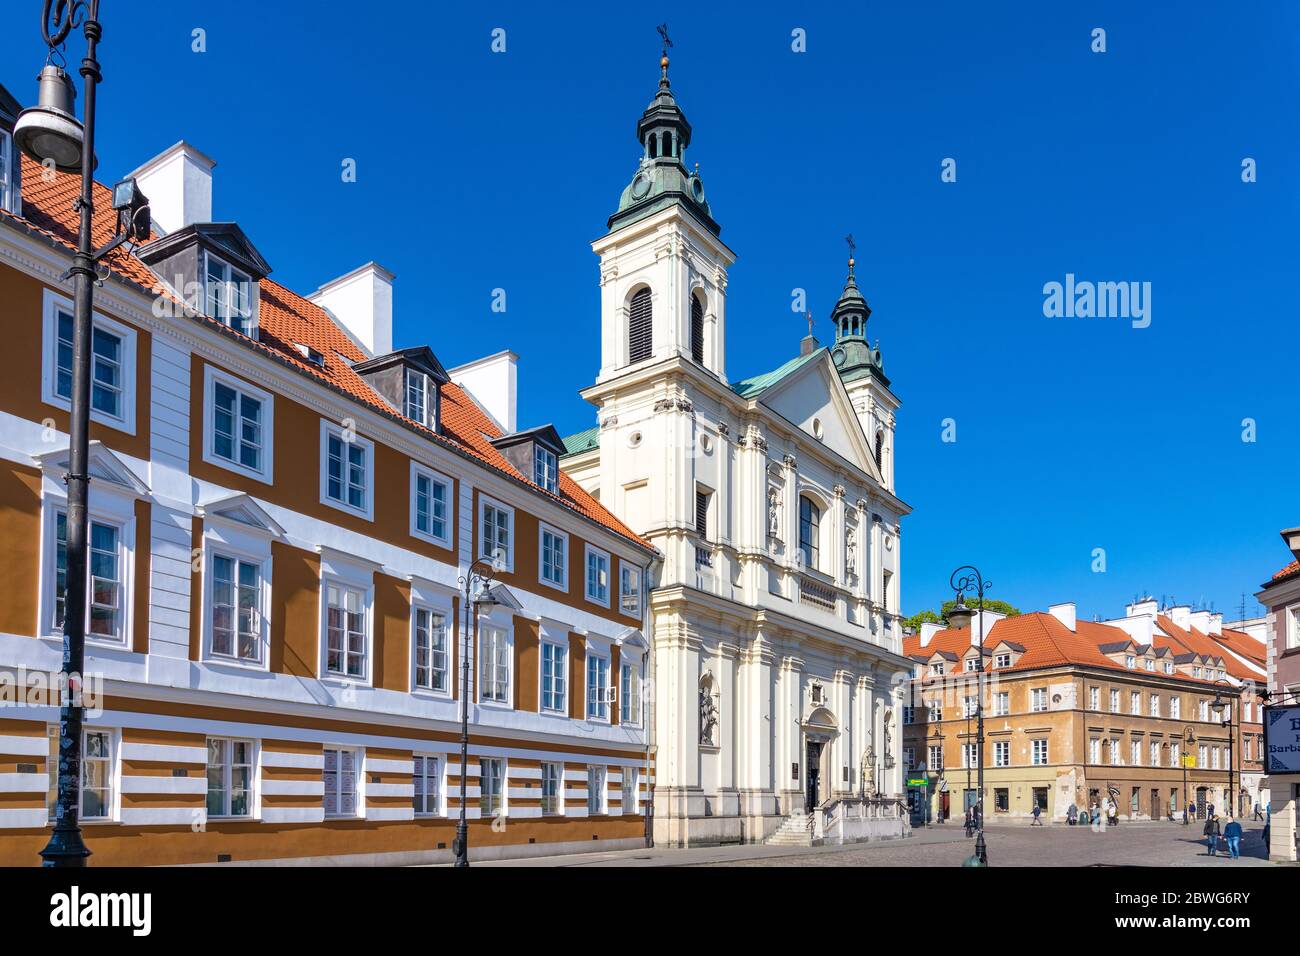 Varsovie, Mazovie / Pologne - 2020/05/10: Façade de l'Église de l'ordre paulinien de Saint-Esprit - kosciol sw. ducha - rue Freta dans la ville historique de New Town Banque D'Images